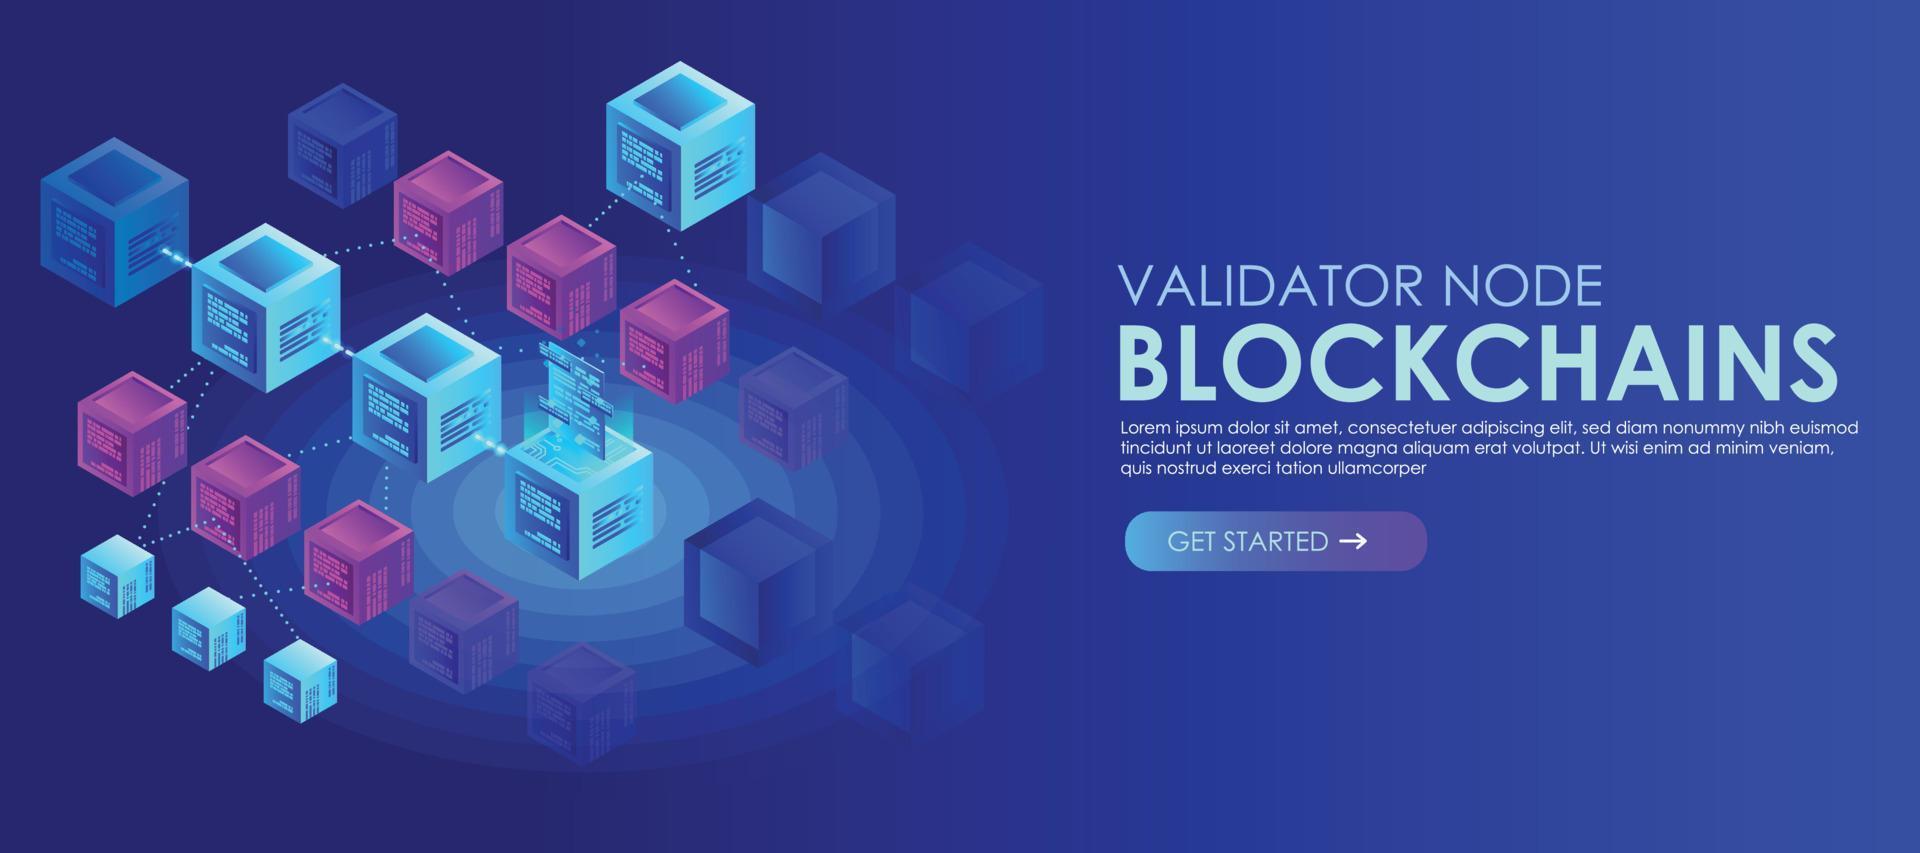 blok validator knooppunt blockchain isometrische vector